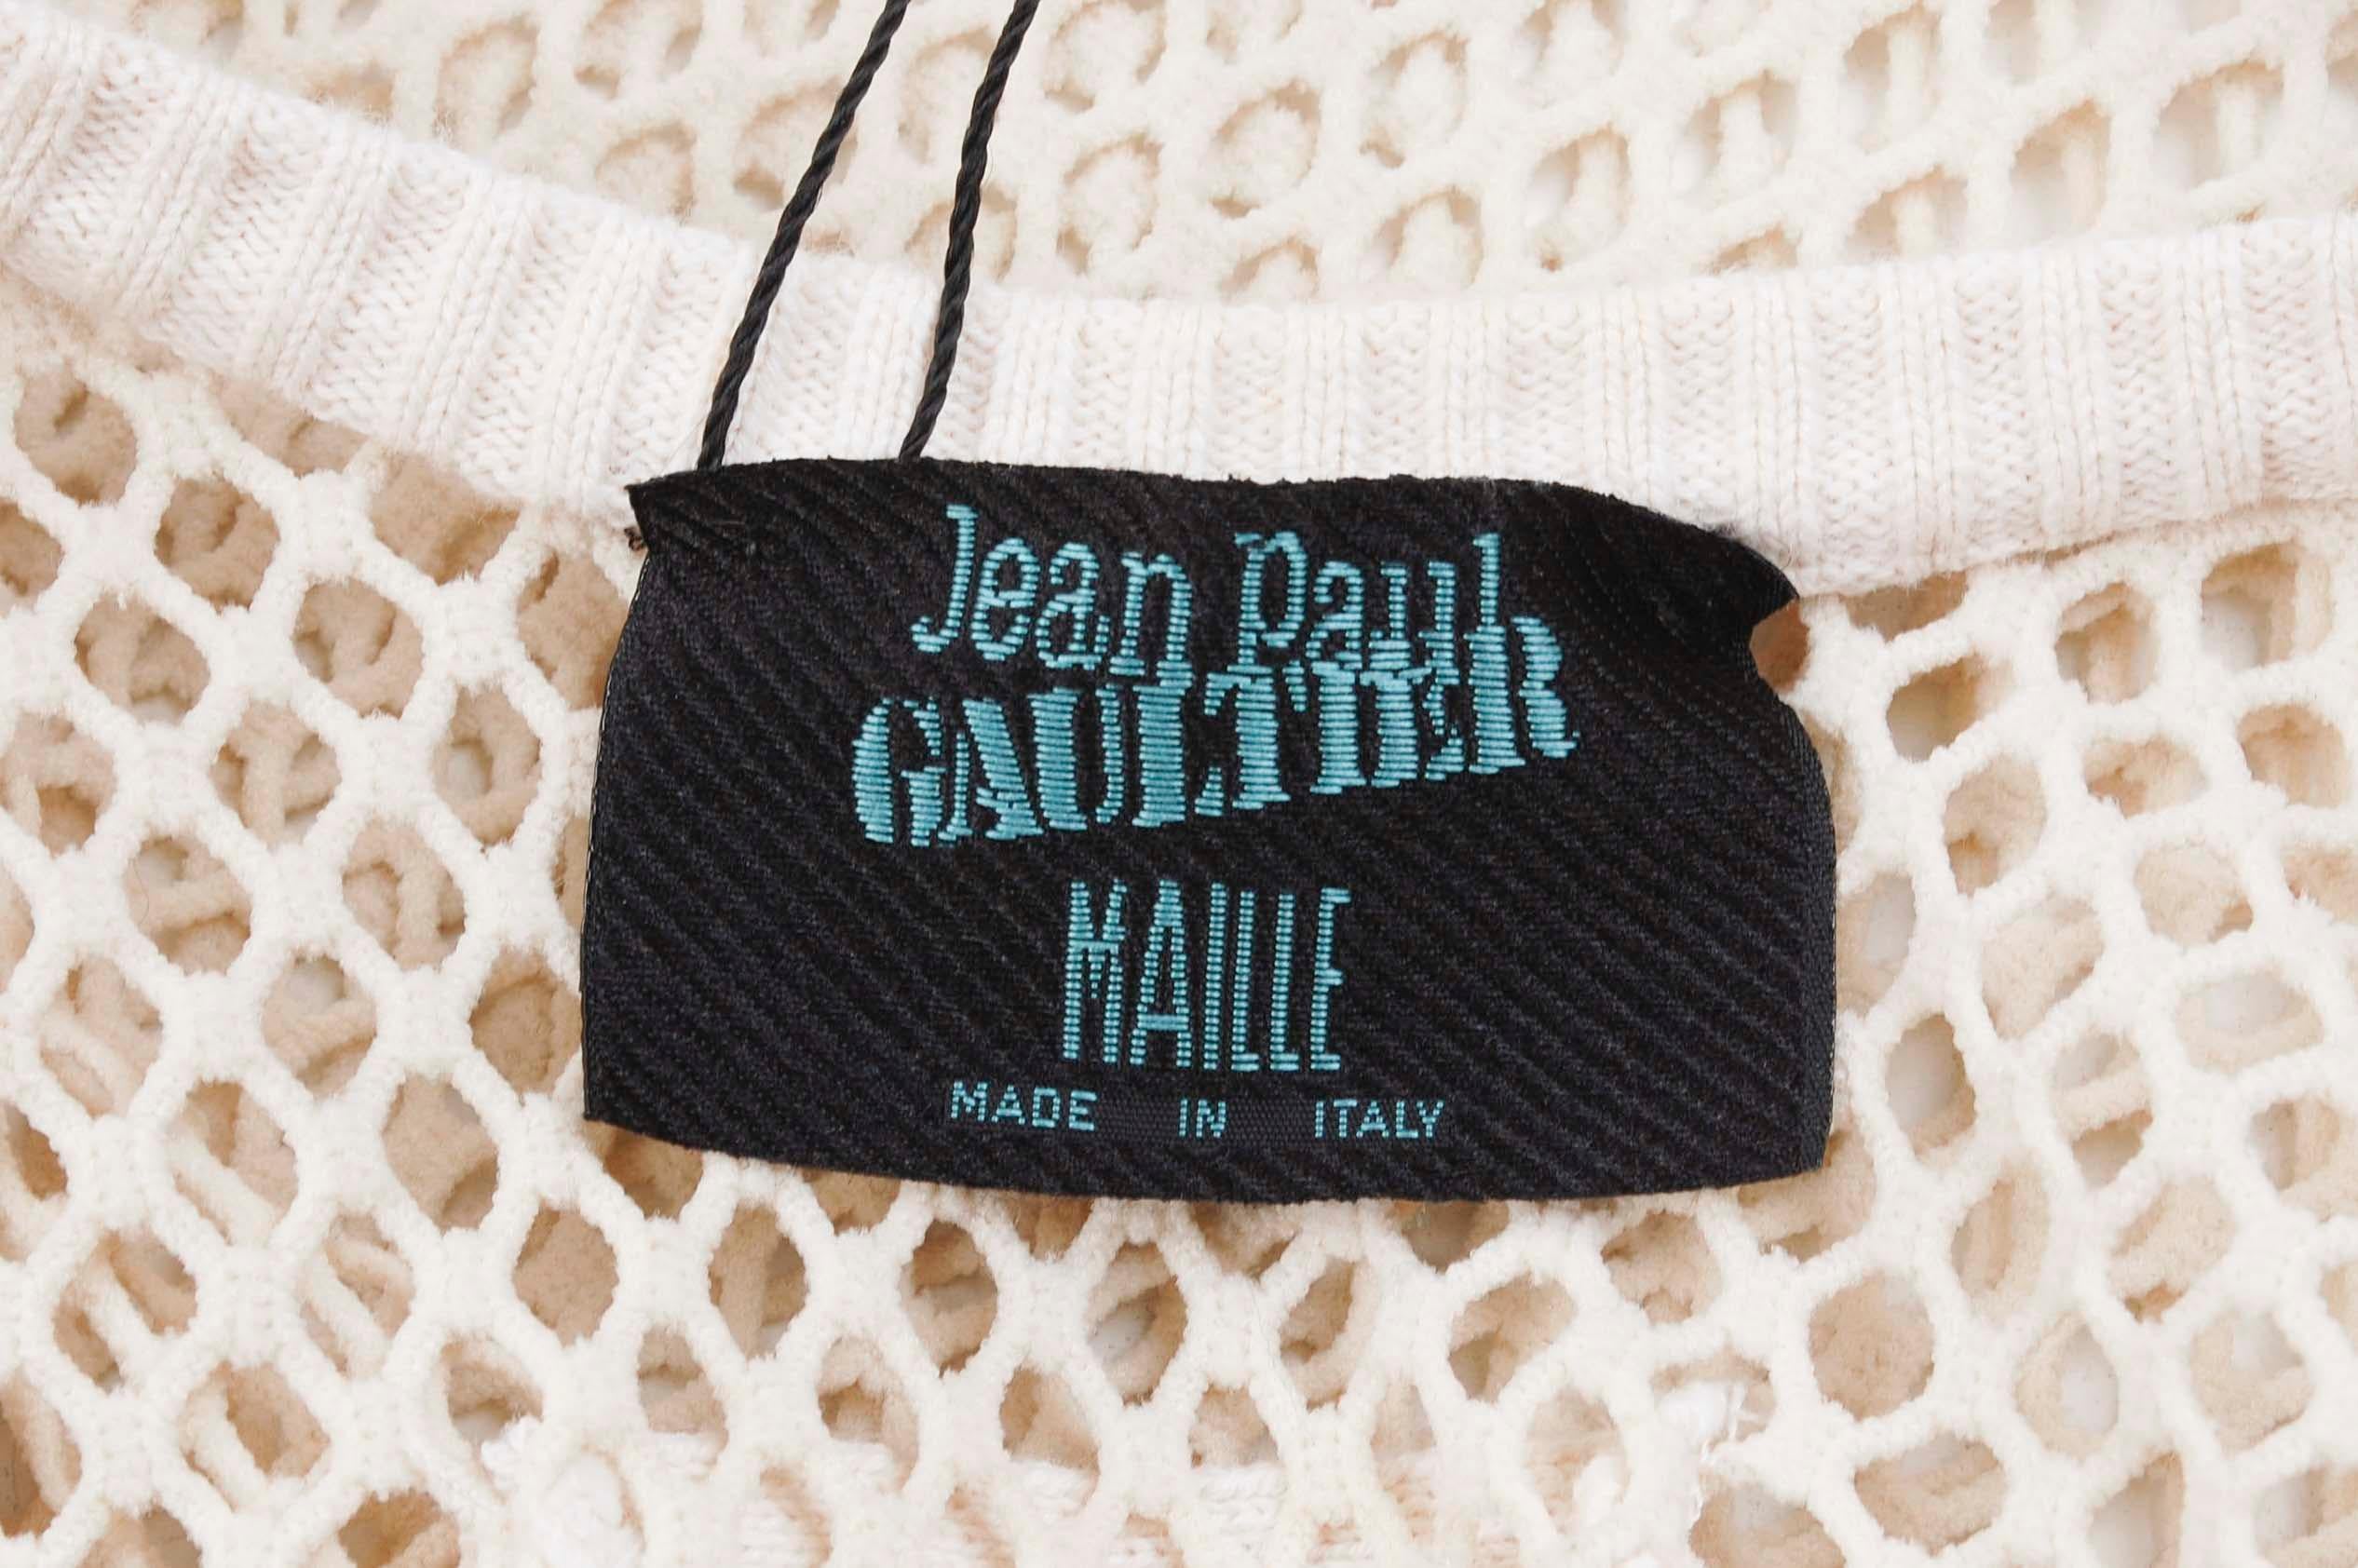 Gray Jean Paul Gaultier Mesh Top Men T-Shirt Size M For Sale